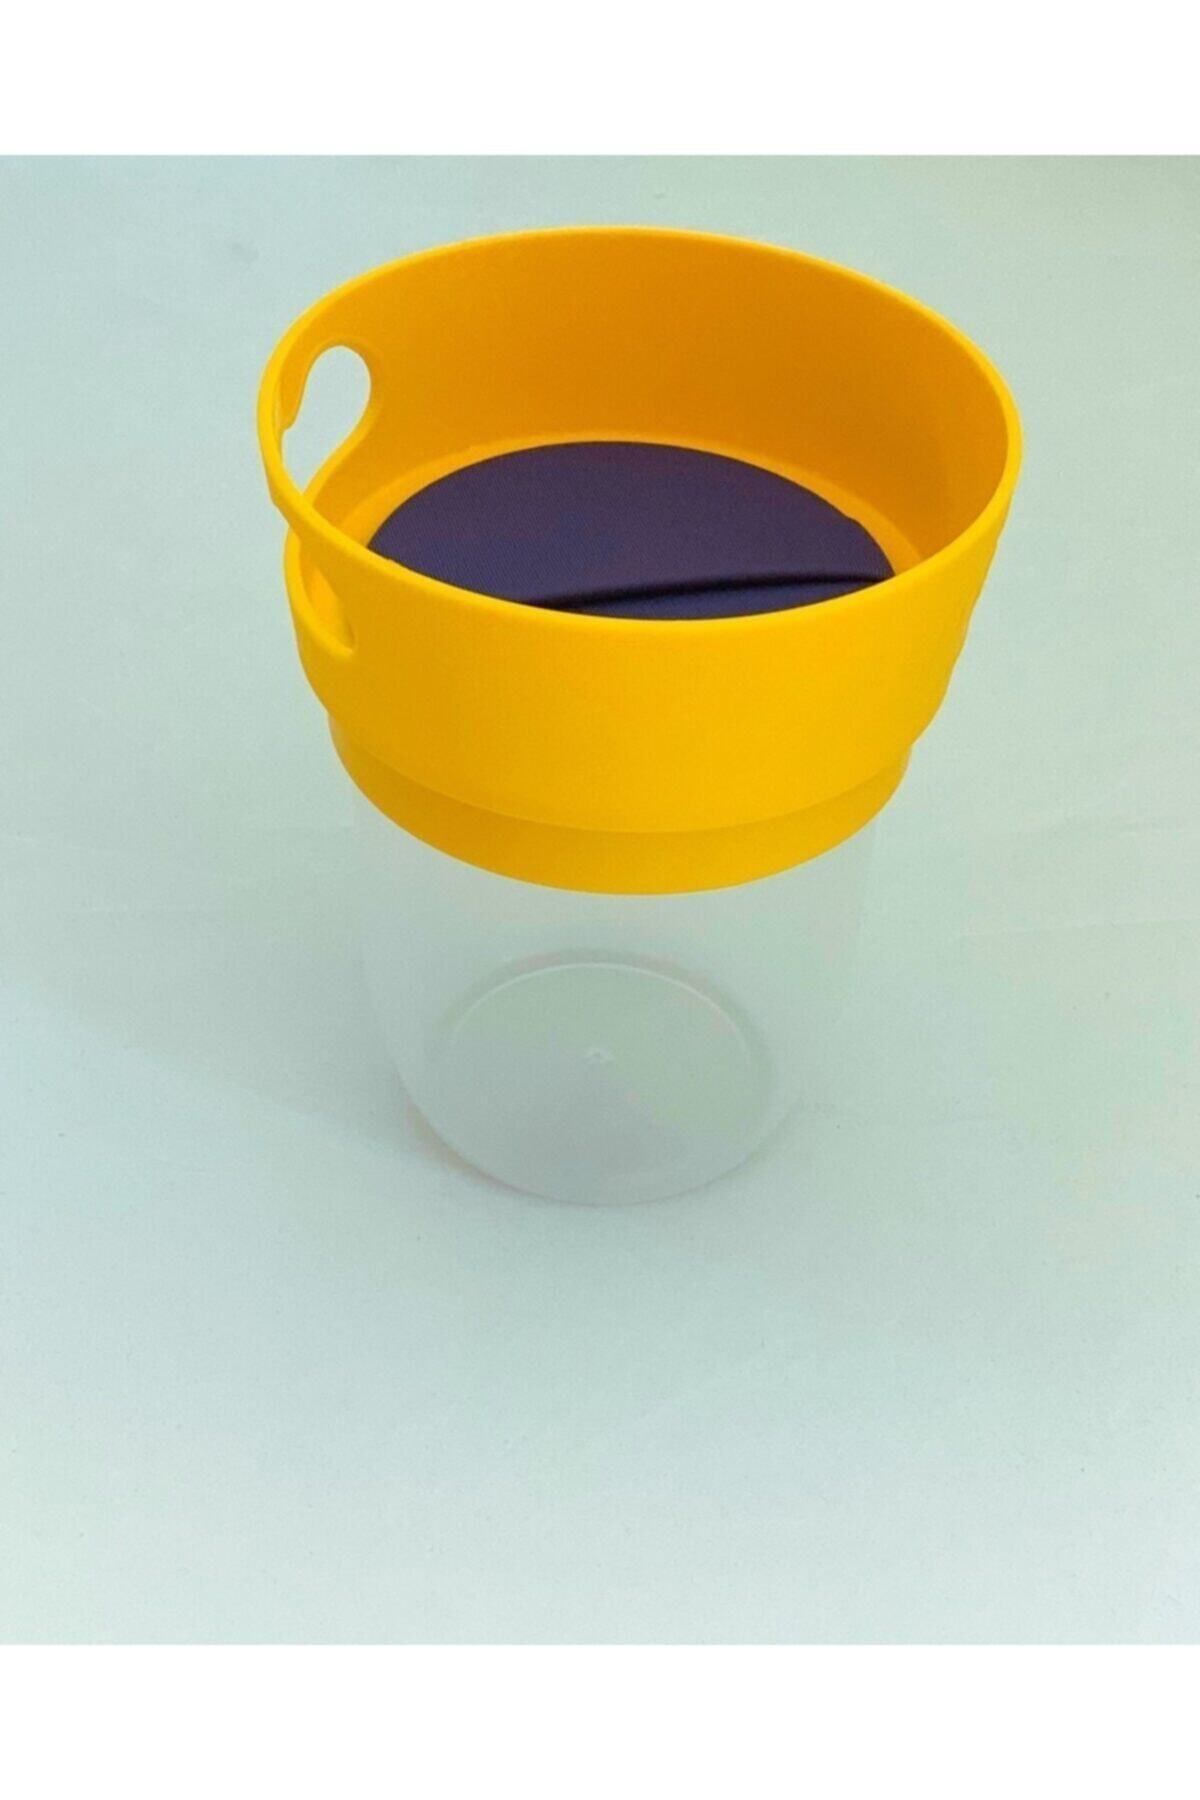 woodhub Sarı Dökülmeyi Önleyen Atıştırmalık Kap / Atıştırma Bardağı Sarı 350-450 ml